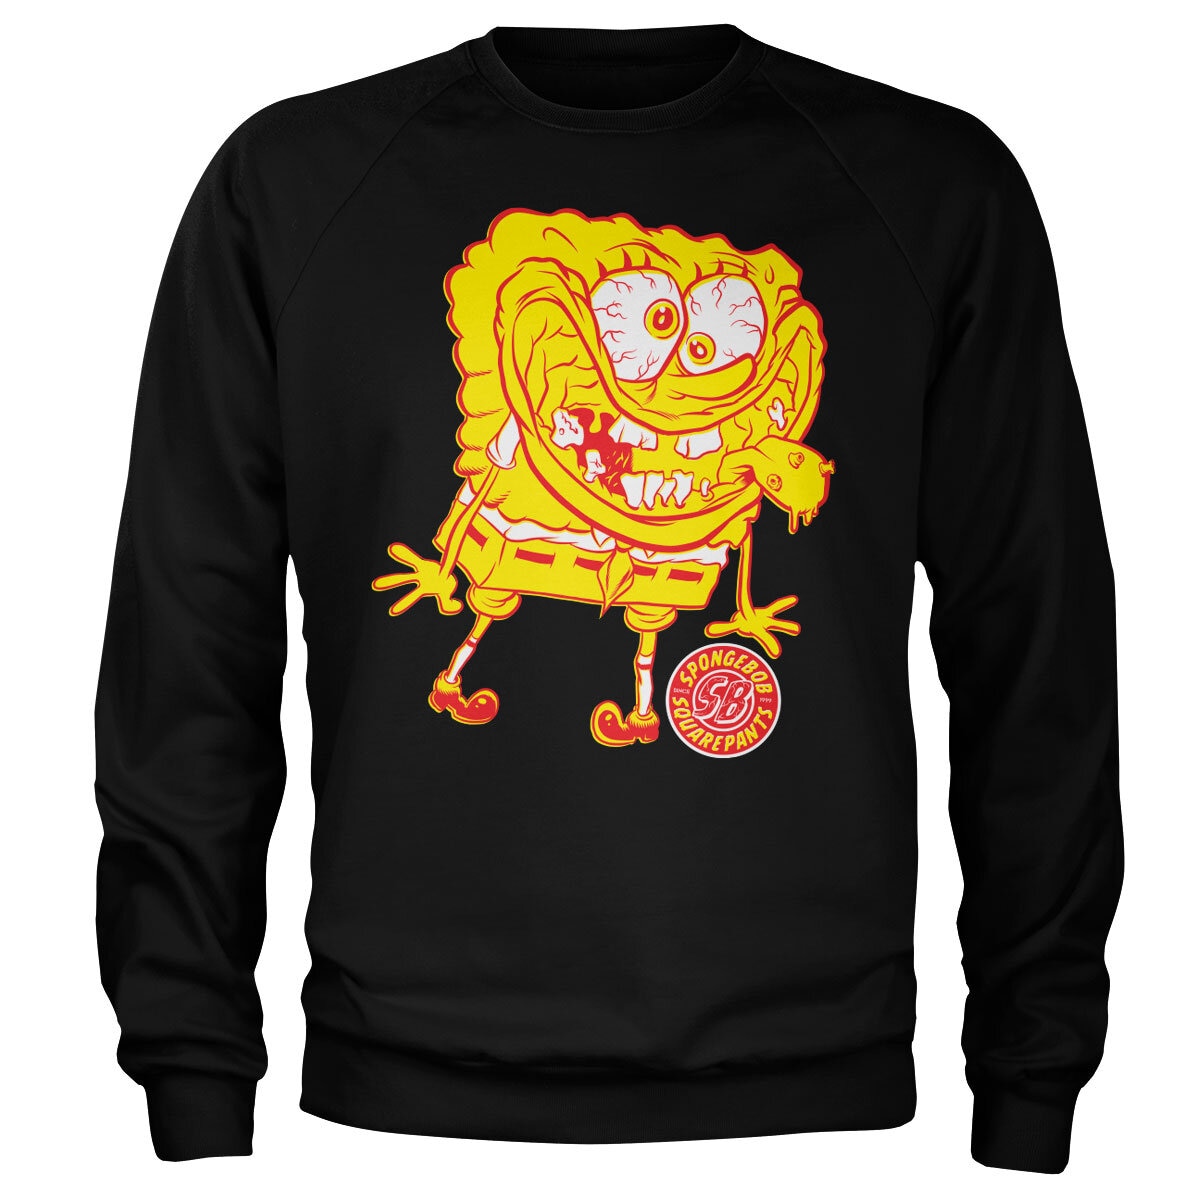 Spongebob Squarepants - Wierd Sweatshirt